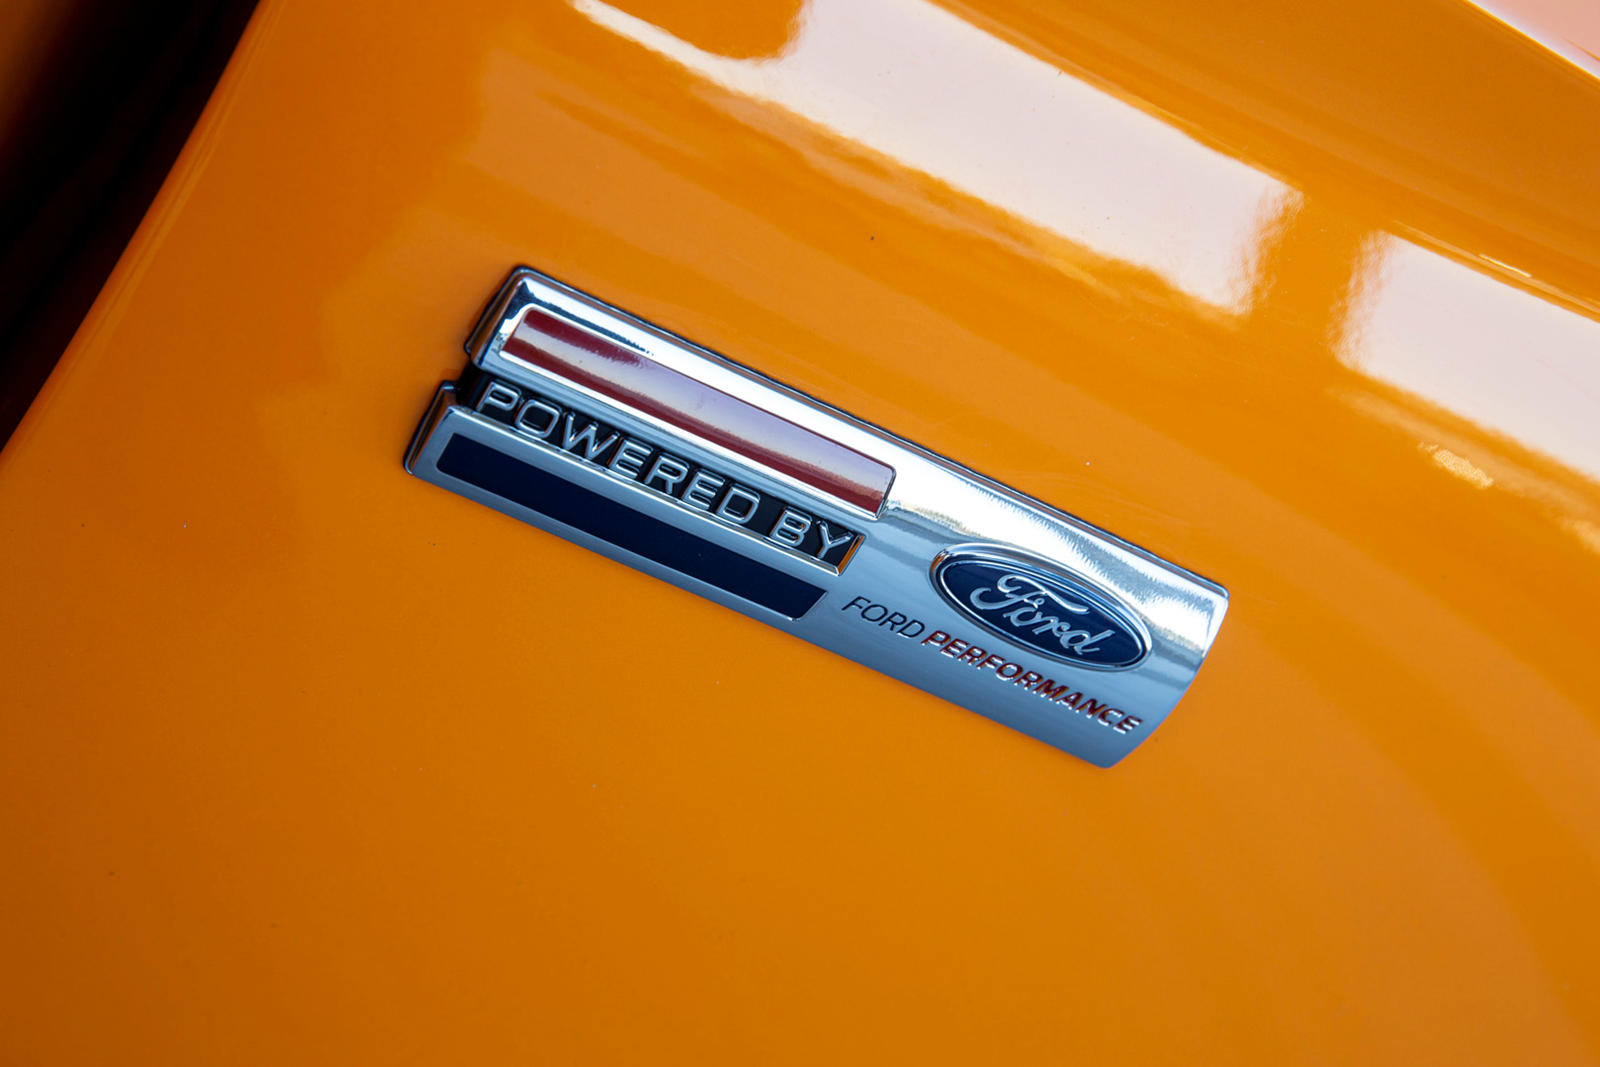 Визуально Shelby American улучшил Mustang GT с помощью вентилируемого капота, который более эффективно охлаждает двигатель, 20-дюймовых колес, уникальной верхней решетки радиатора, новых боковых рокеров, а также заднего спойлера. Как дань уважения го